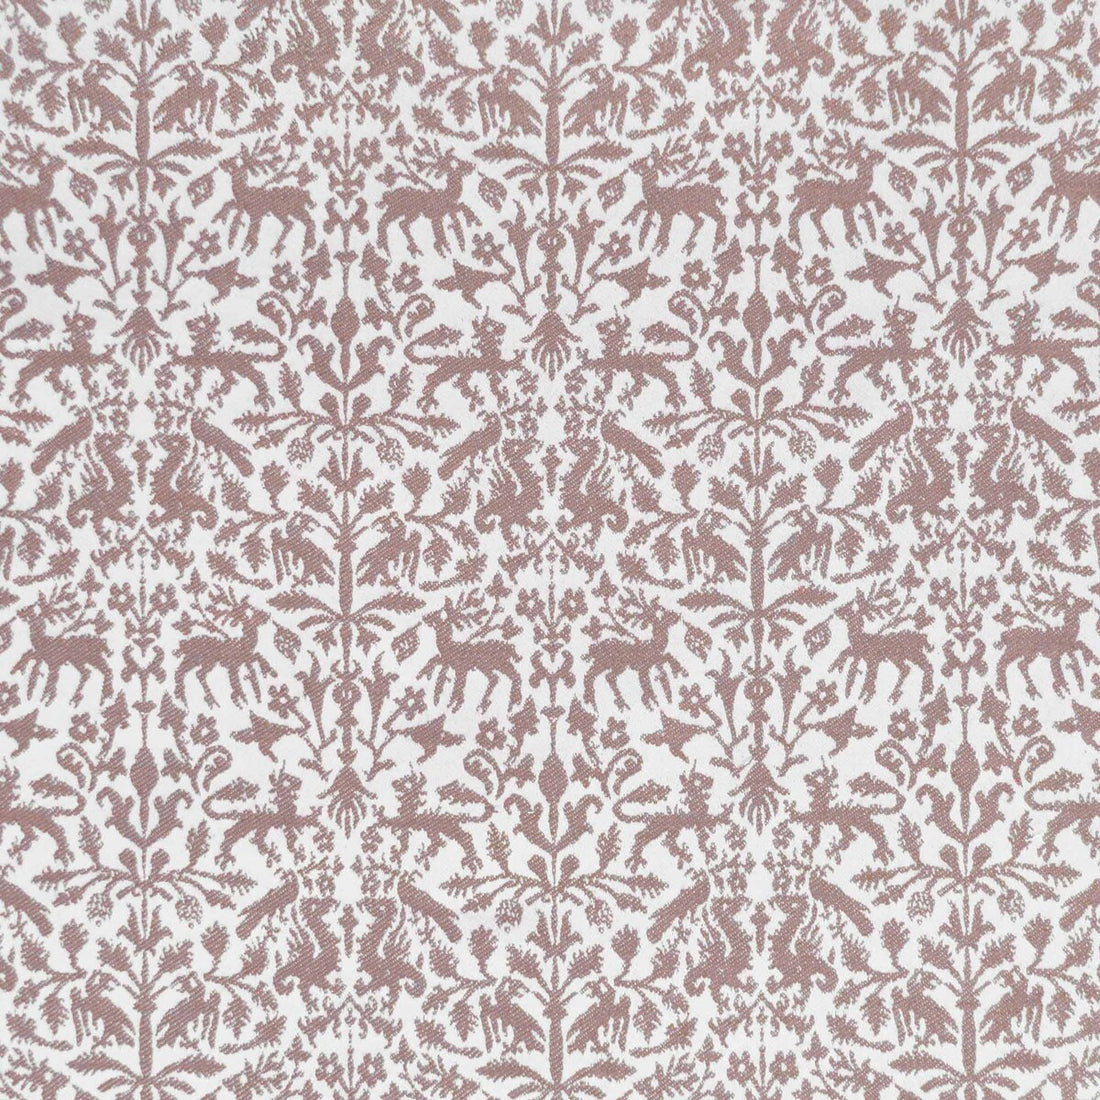 Augusta Emerita fabric in rosa viejo color - pattern LCT1112.007.0 - by Gaston y Daniela in the Lorenzo Castillo IX Hesperia collection